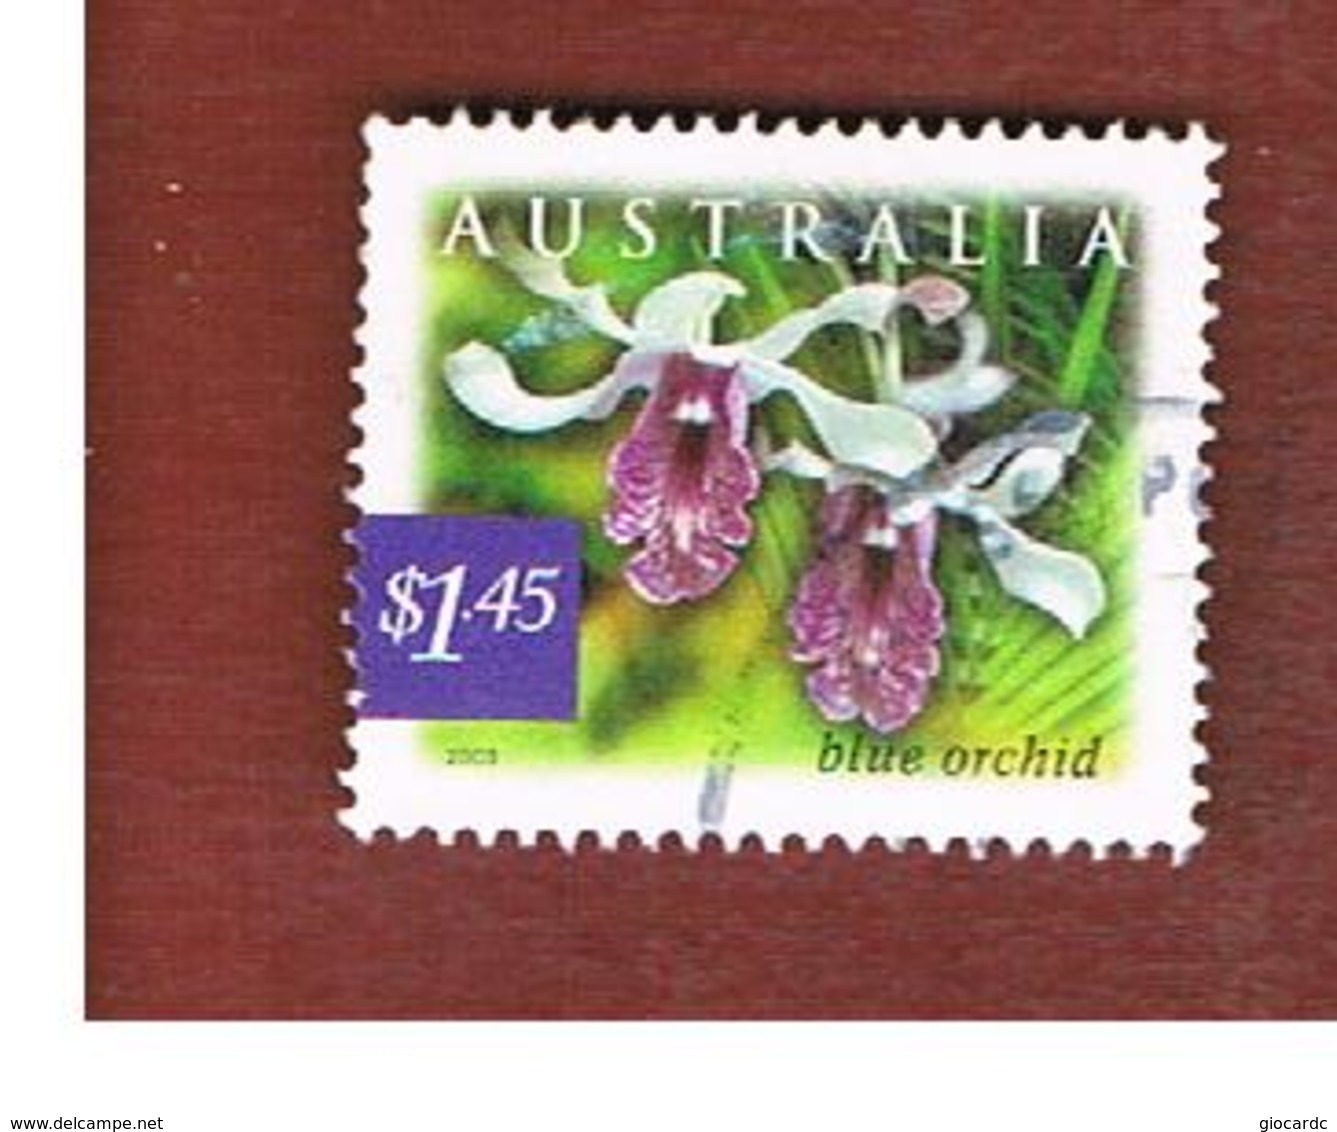 AUSTRALIA  -  SG 2276  - 2003 FLOWERS: BLUE ORCHID       -       USED - Usati